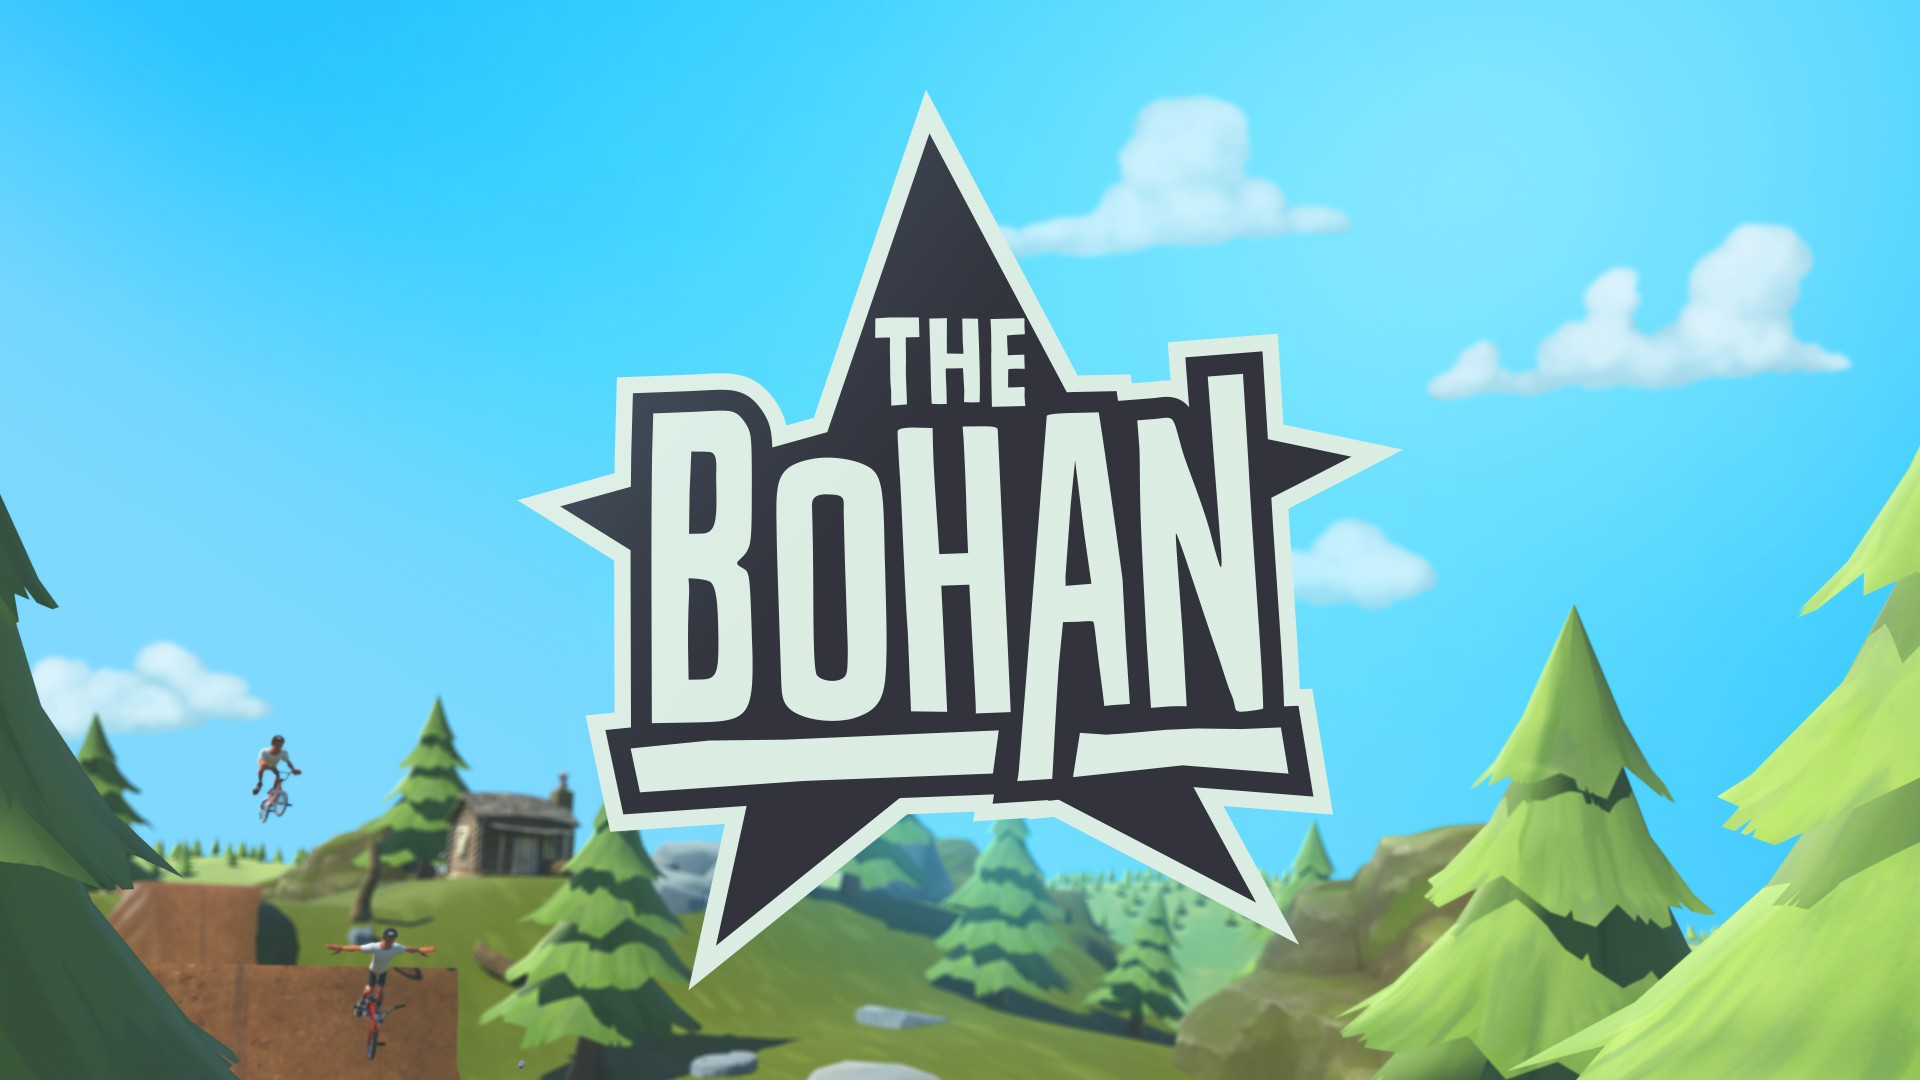 The Bohan